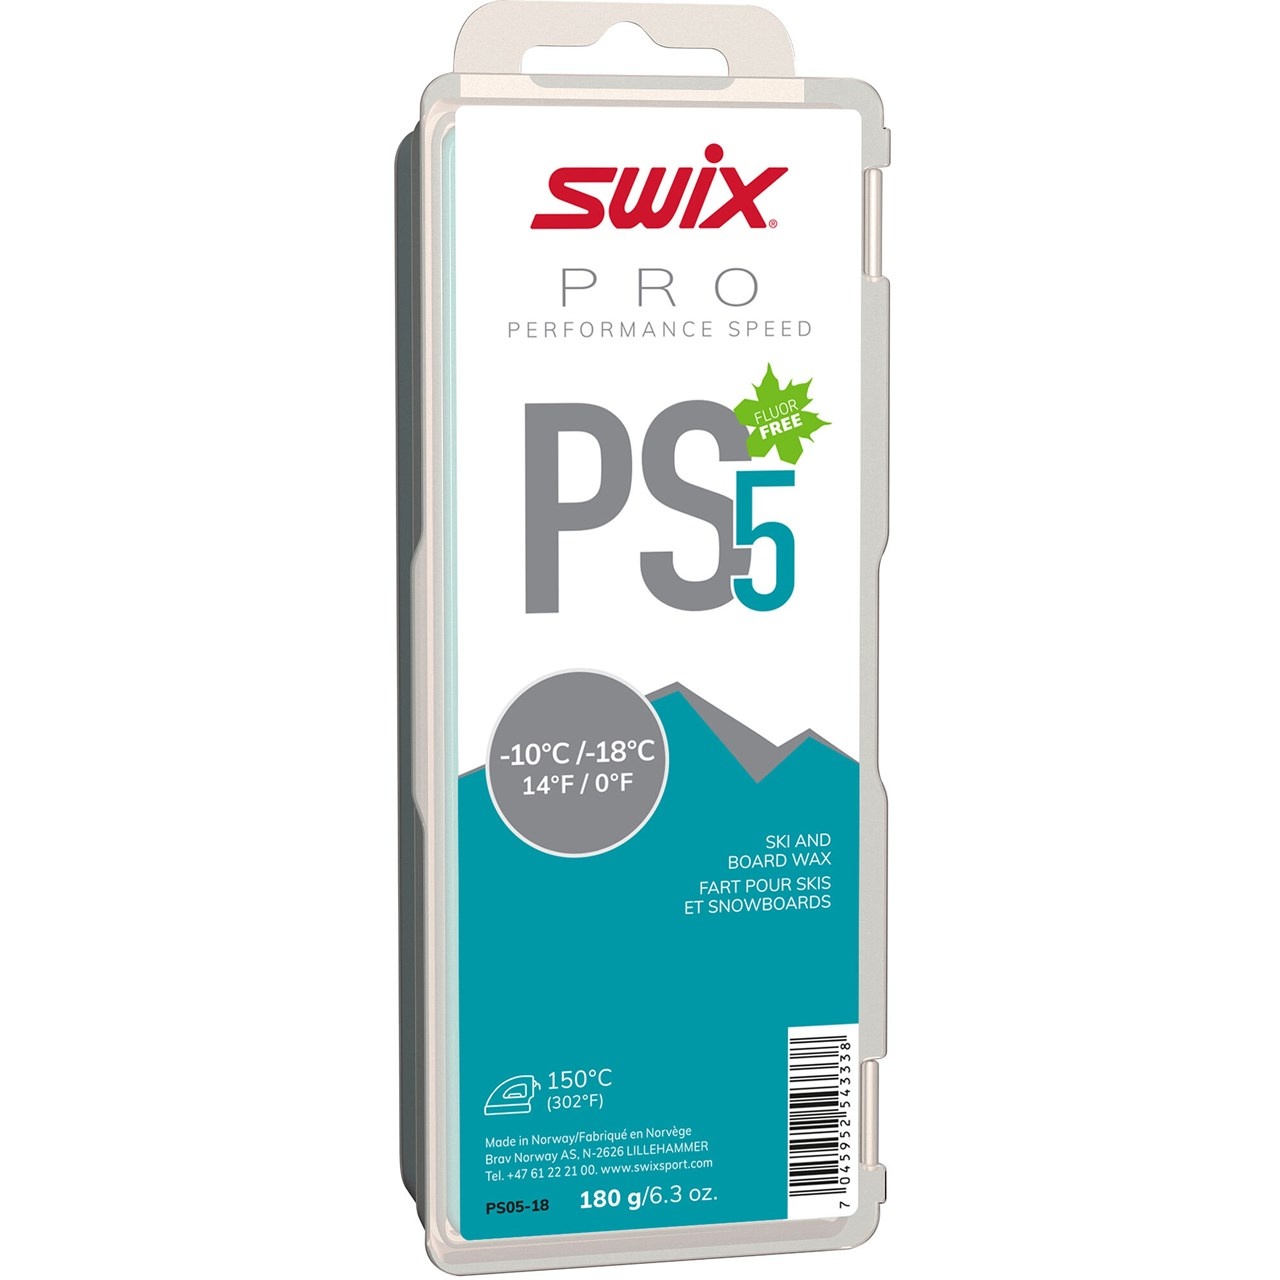 Swix Pro Performance Speed Wax 180g - Ski West